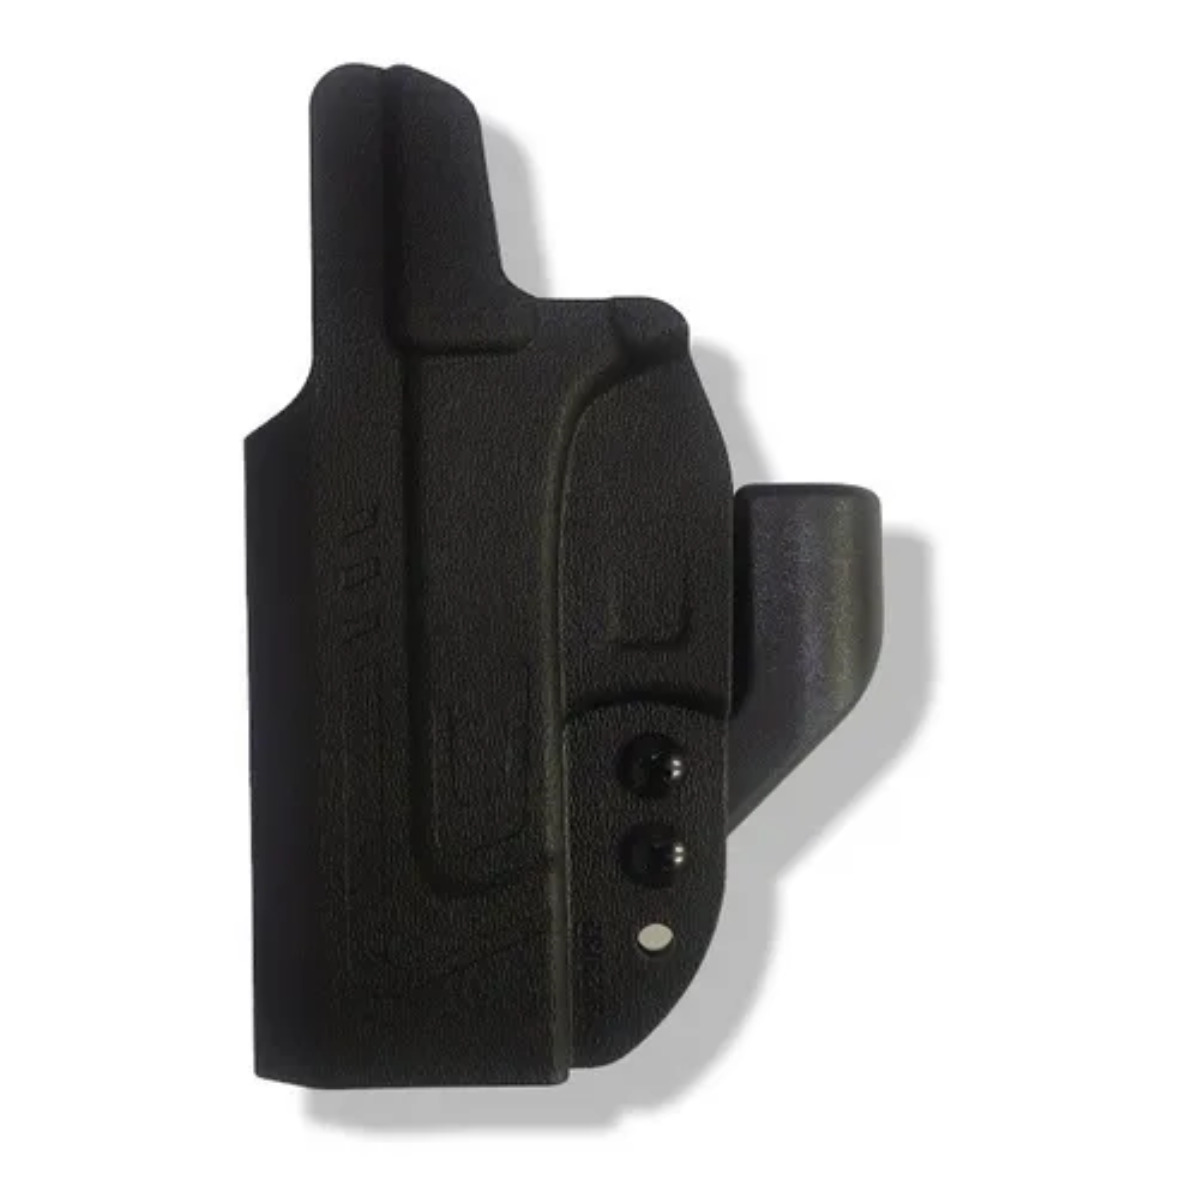 Funda Interna Glock 25 Polimero Cytac